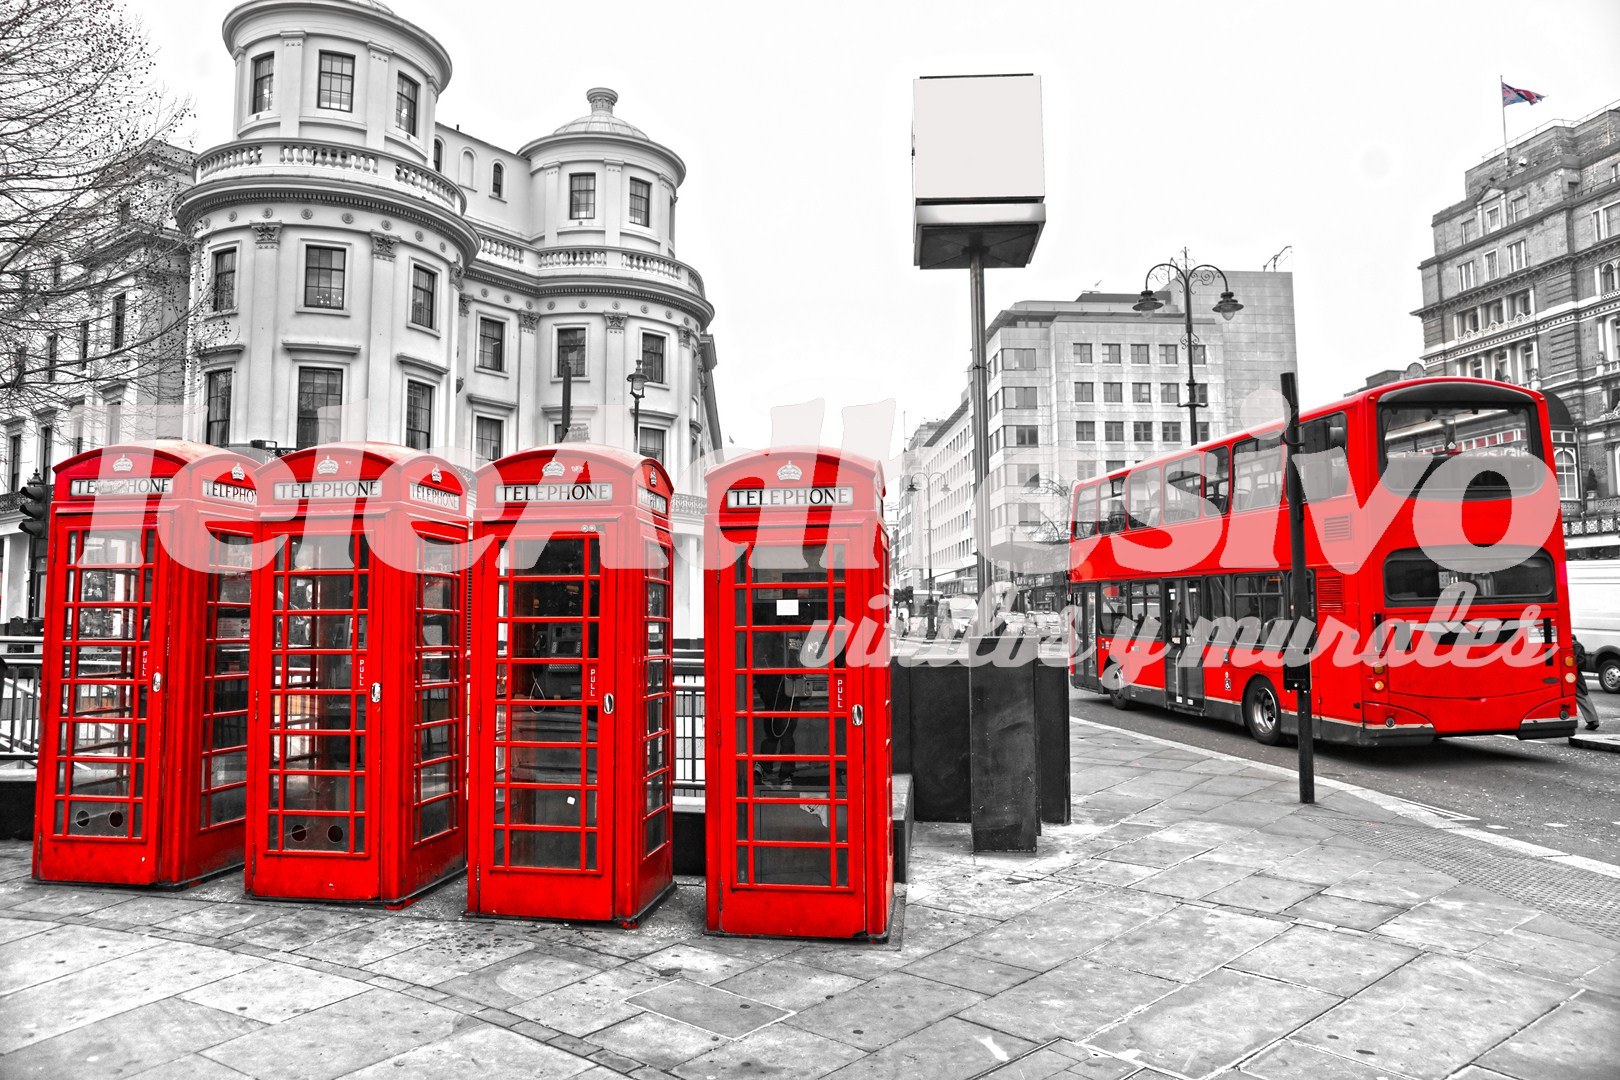 Fototapeten: London in Rot